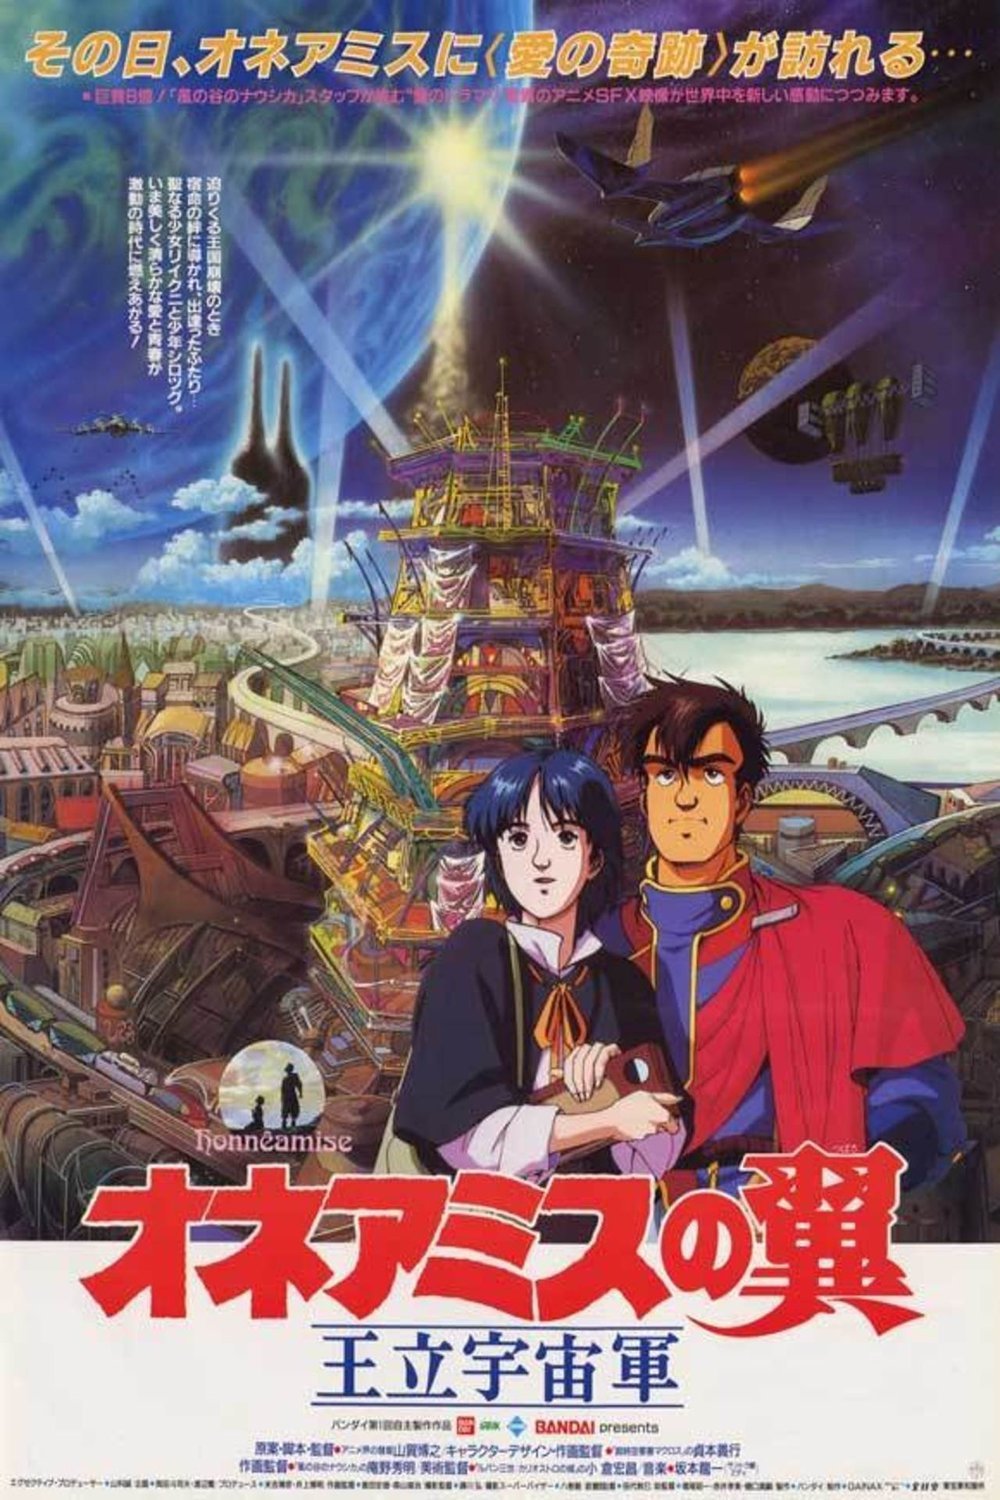 L'affiche du film Ôritsu uchûgun Oneamisu no tsubasa